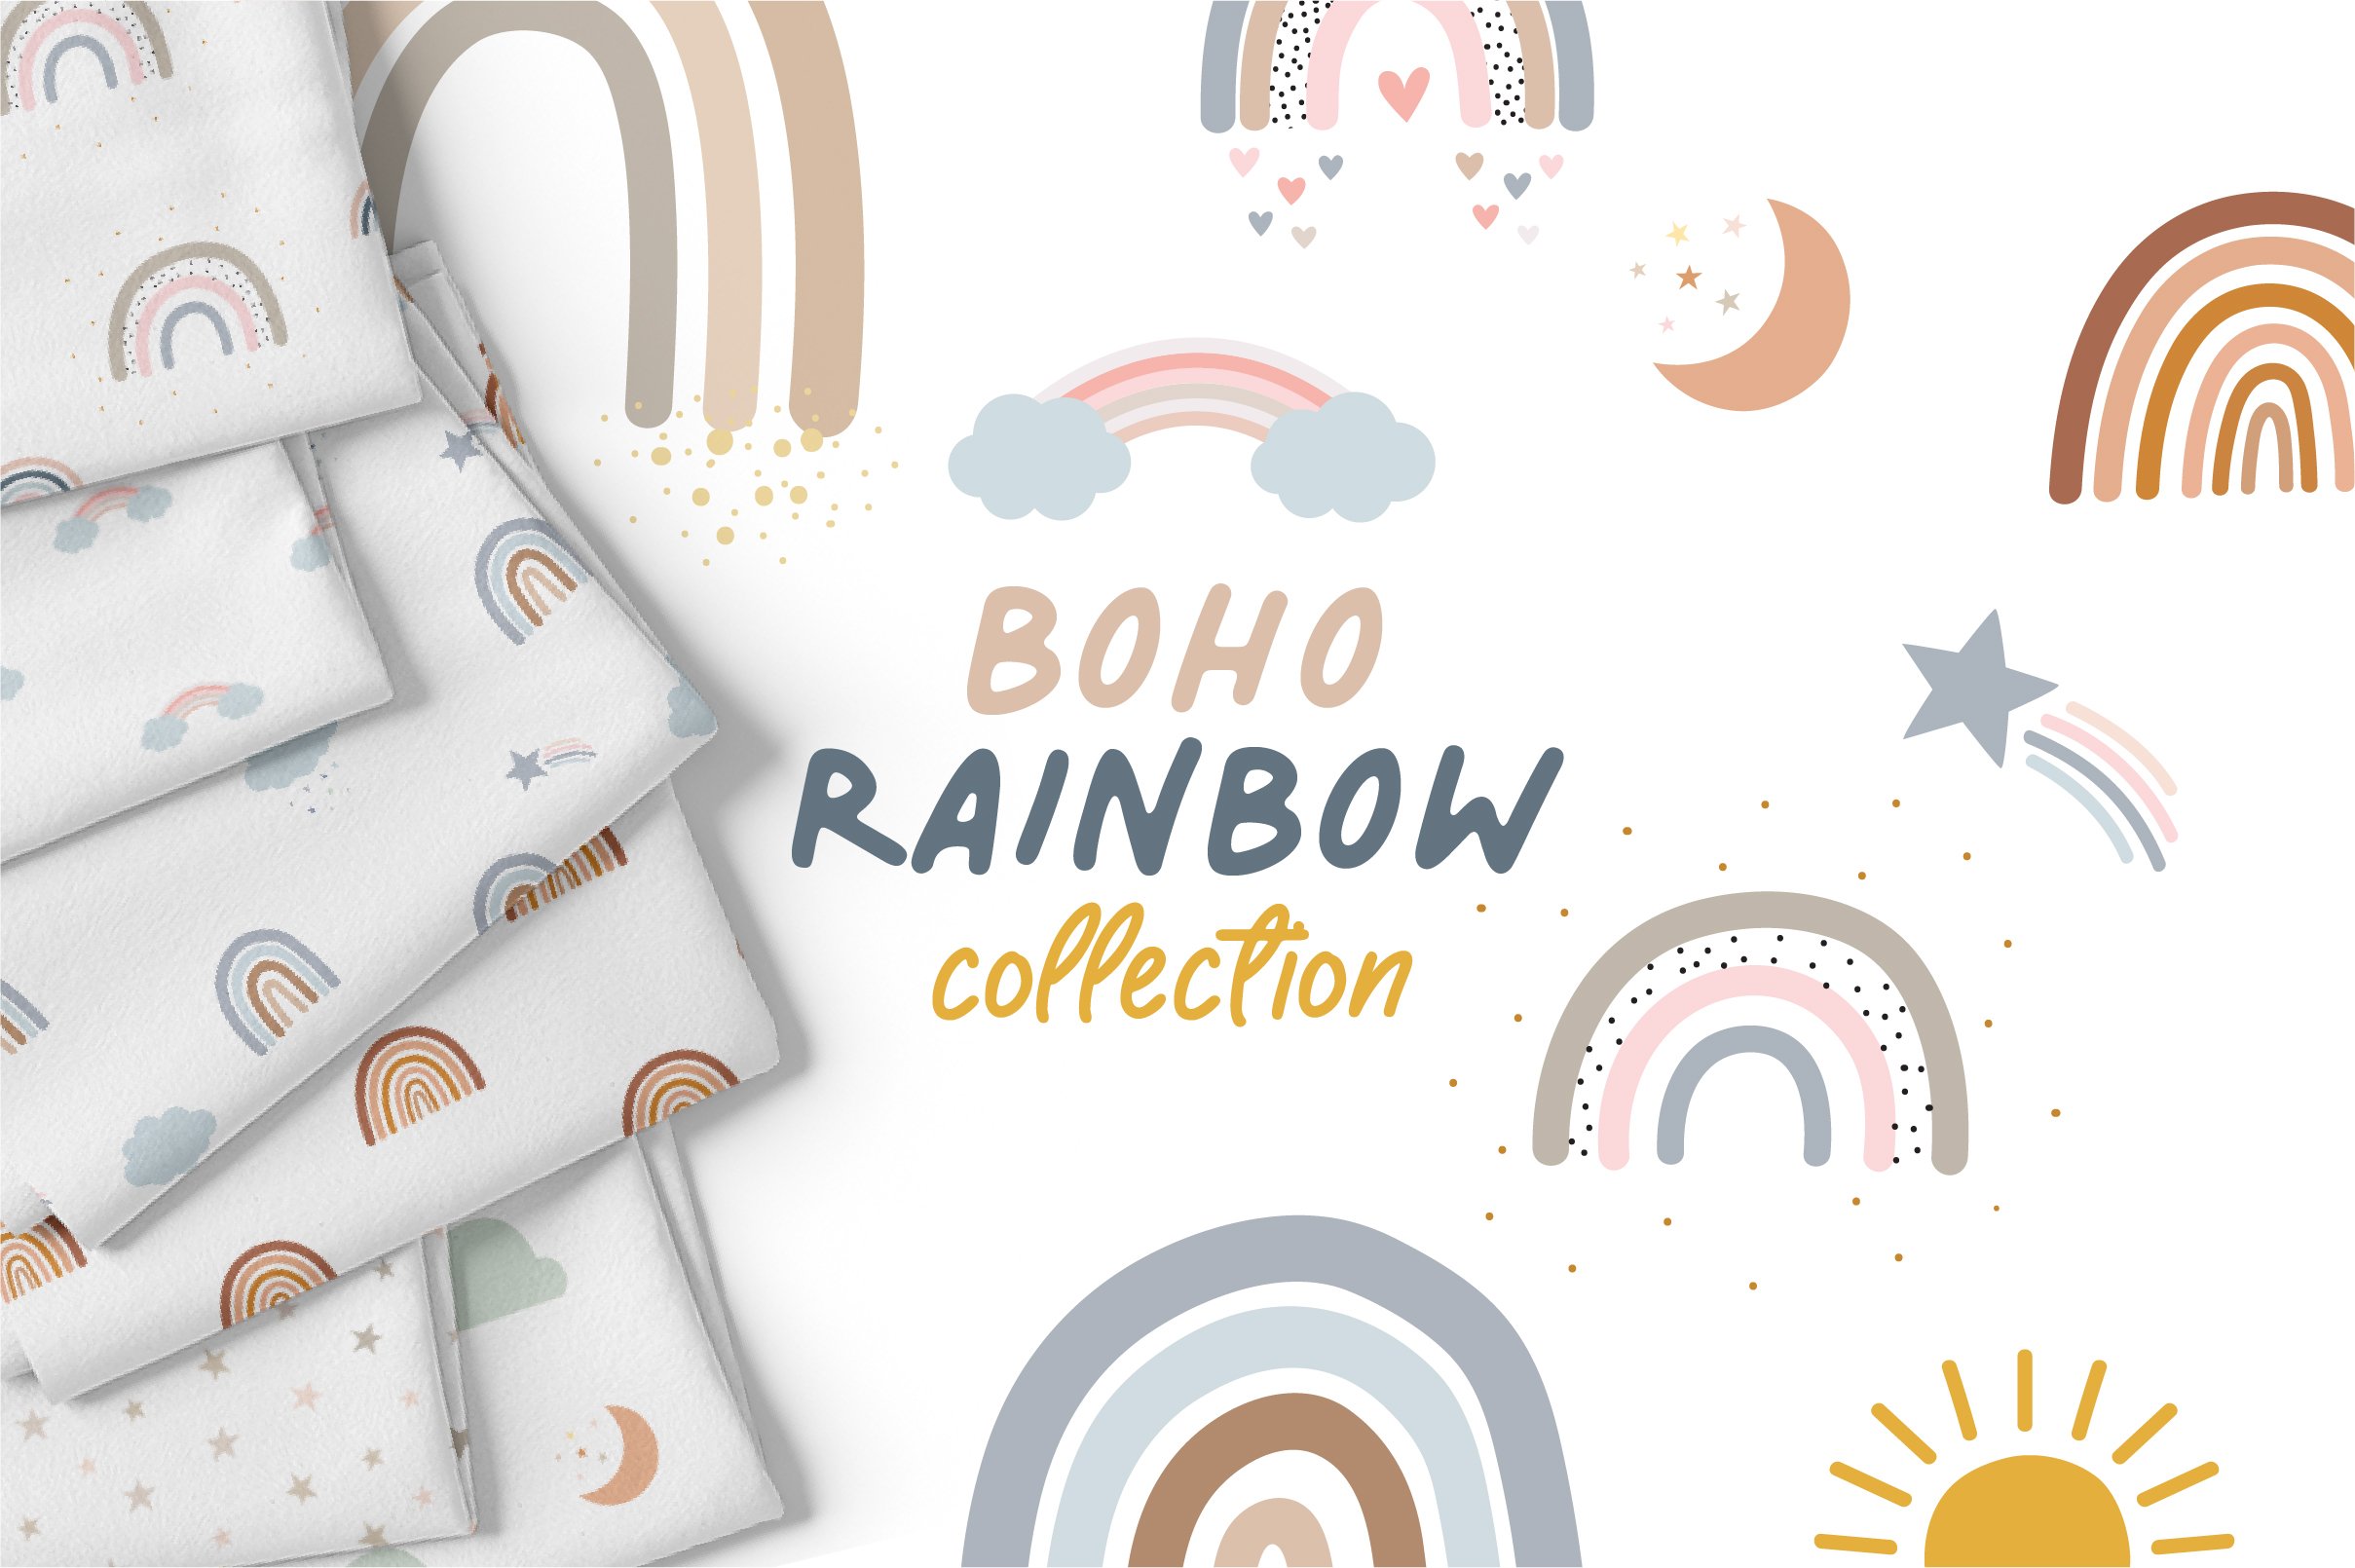 Boho Rainbow | Patterns + Elements cover image.